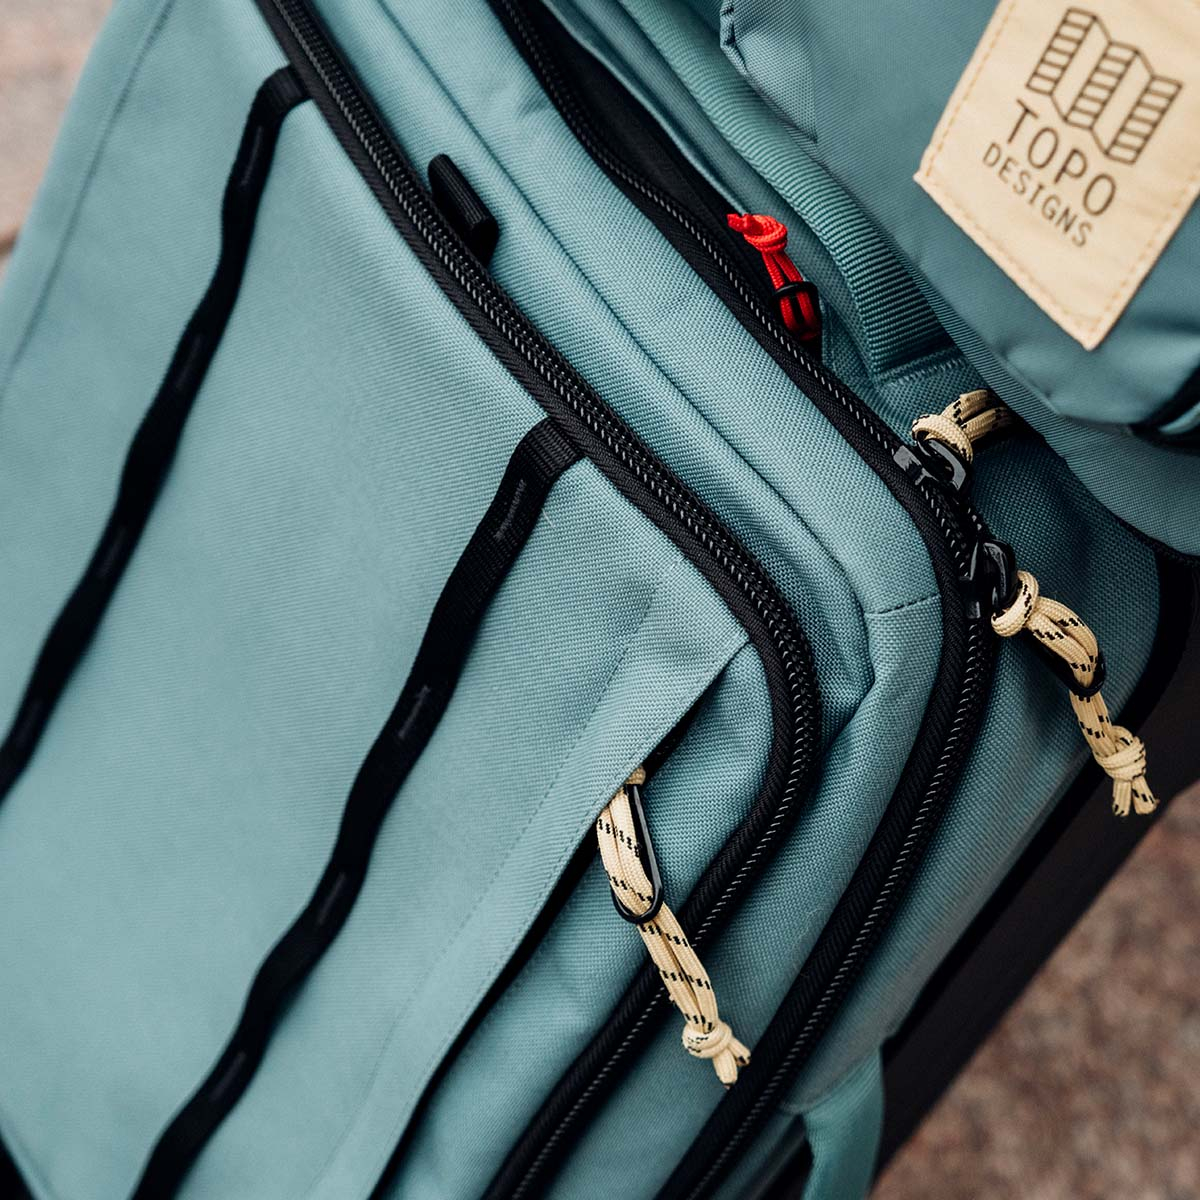 Topo Designs Global Travel Bag Roller Sea Pine, Die handgepäckfreundliche Größe und die 3-Wege-Tragefunktion sorgen für eine reibungslose Reise